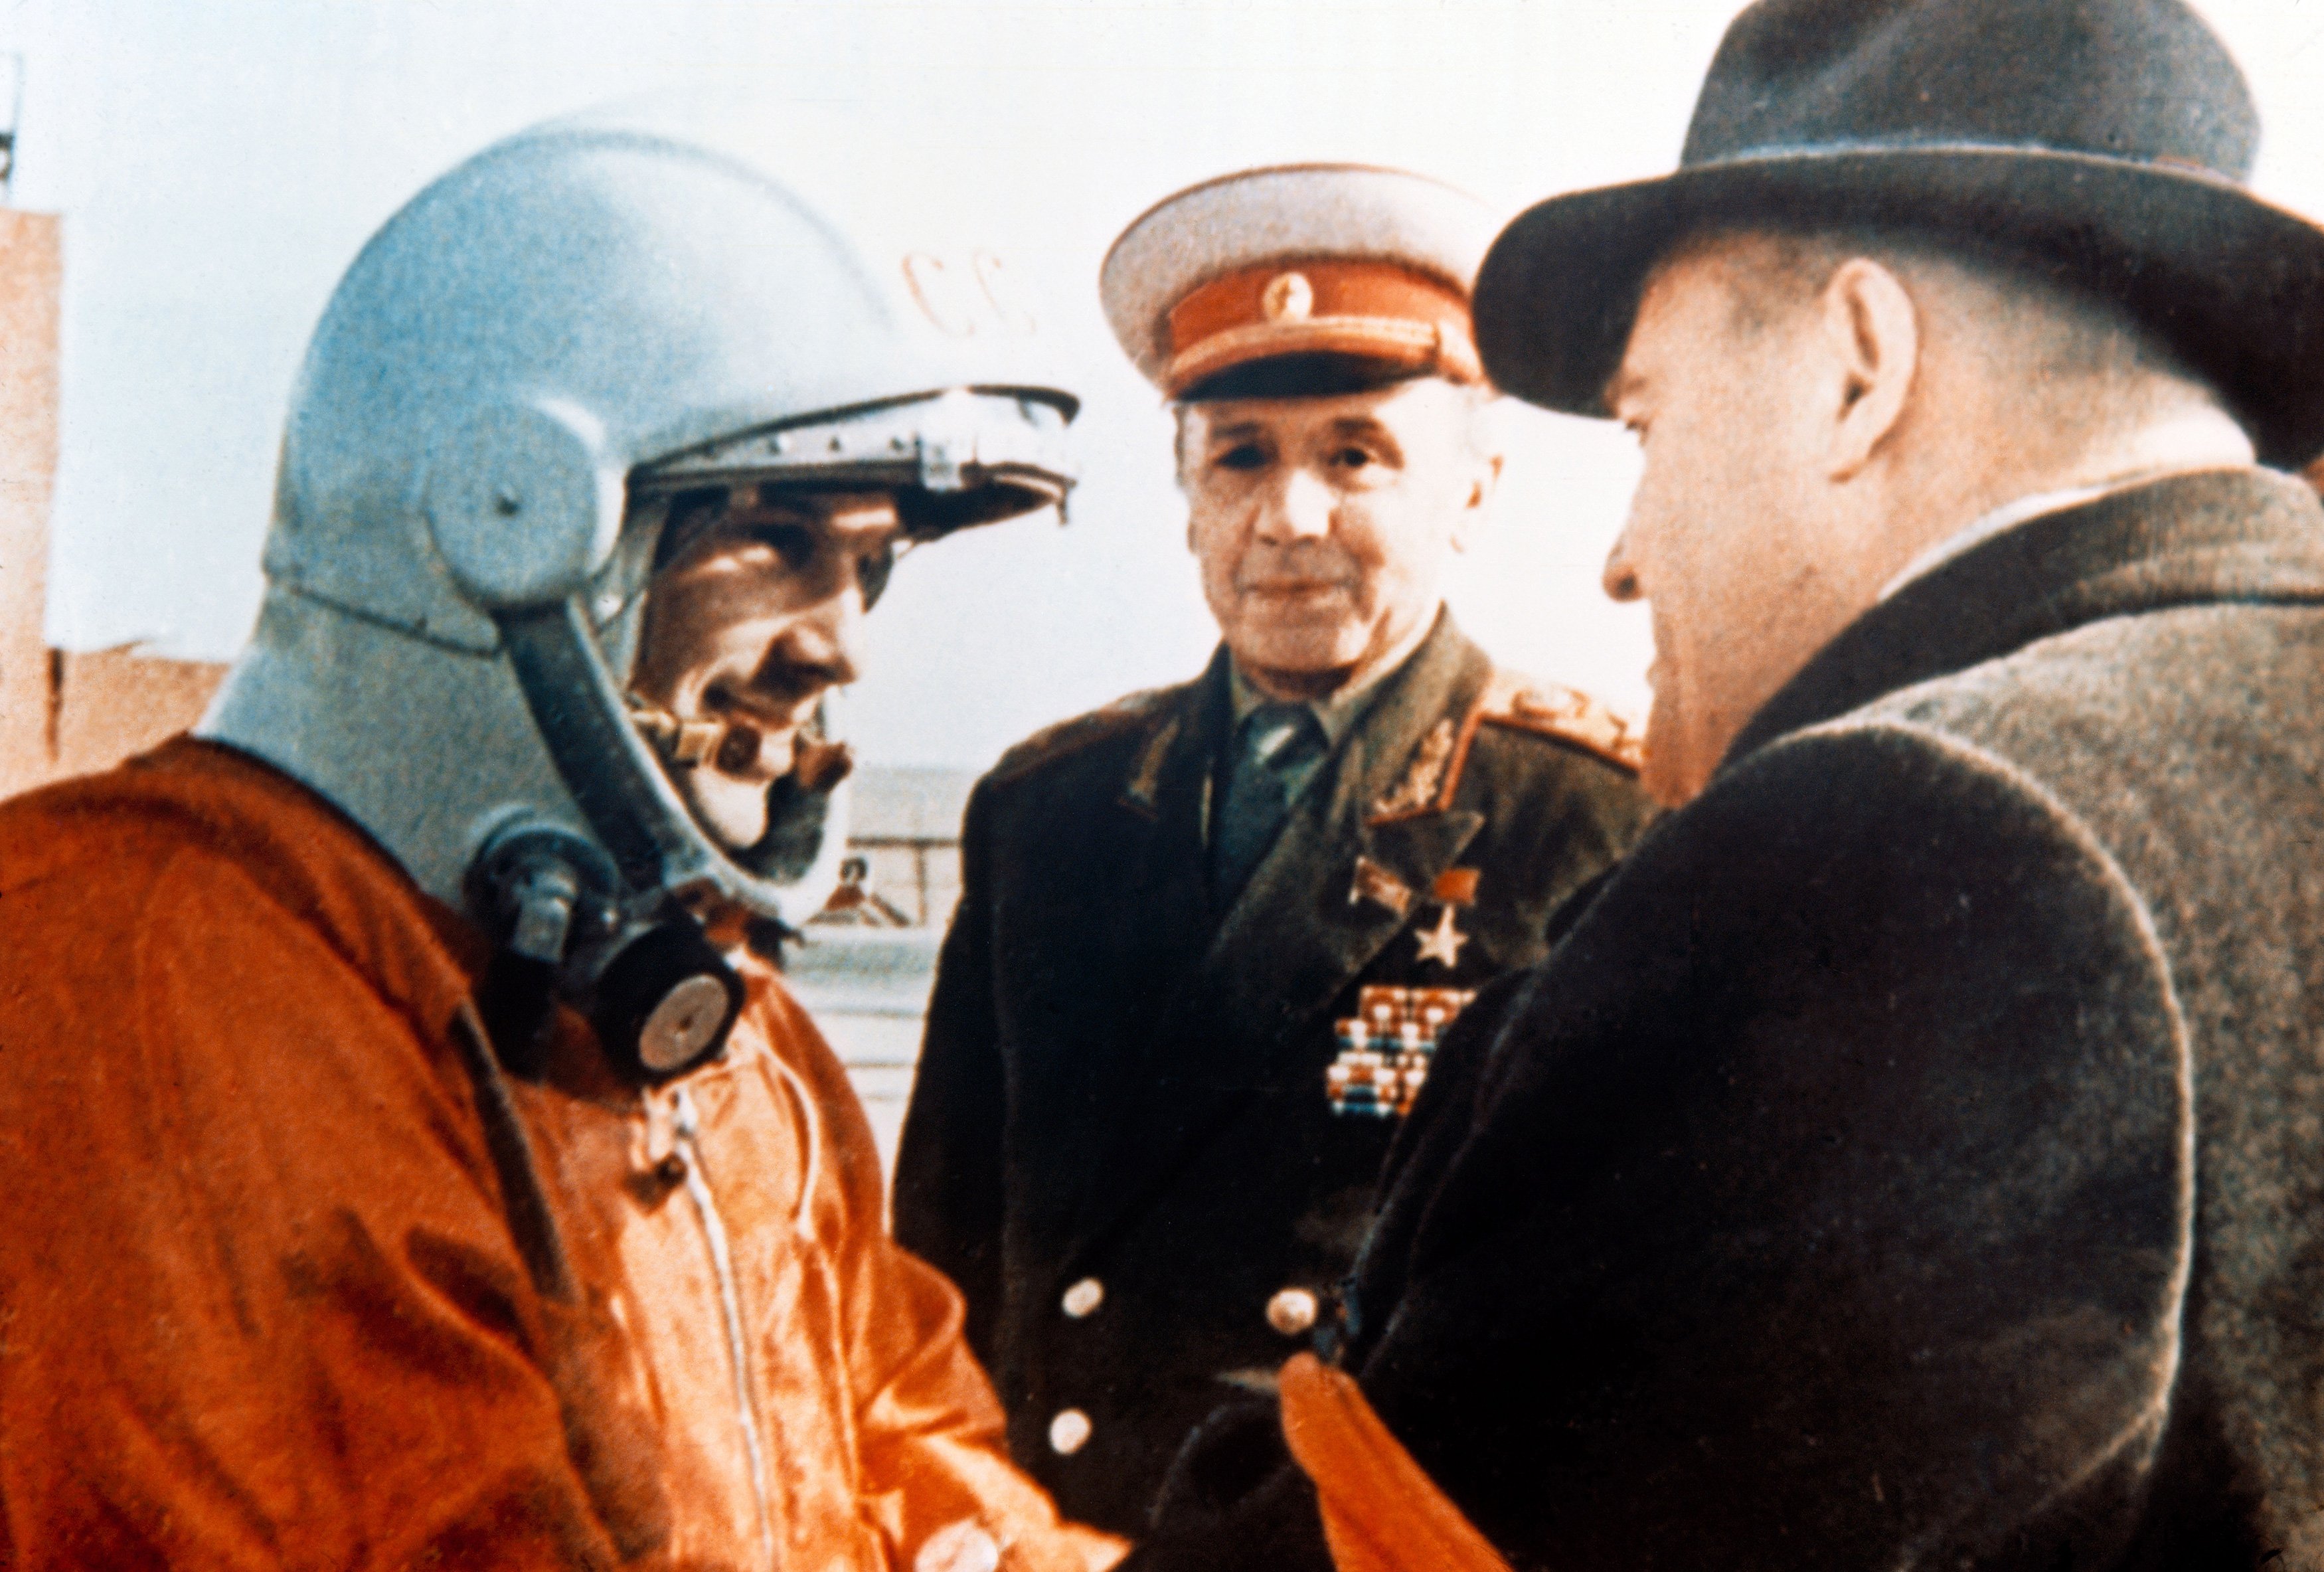 Ю.А Гагарин и с.п Королев перед стартом полета 12.04.1961